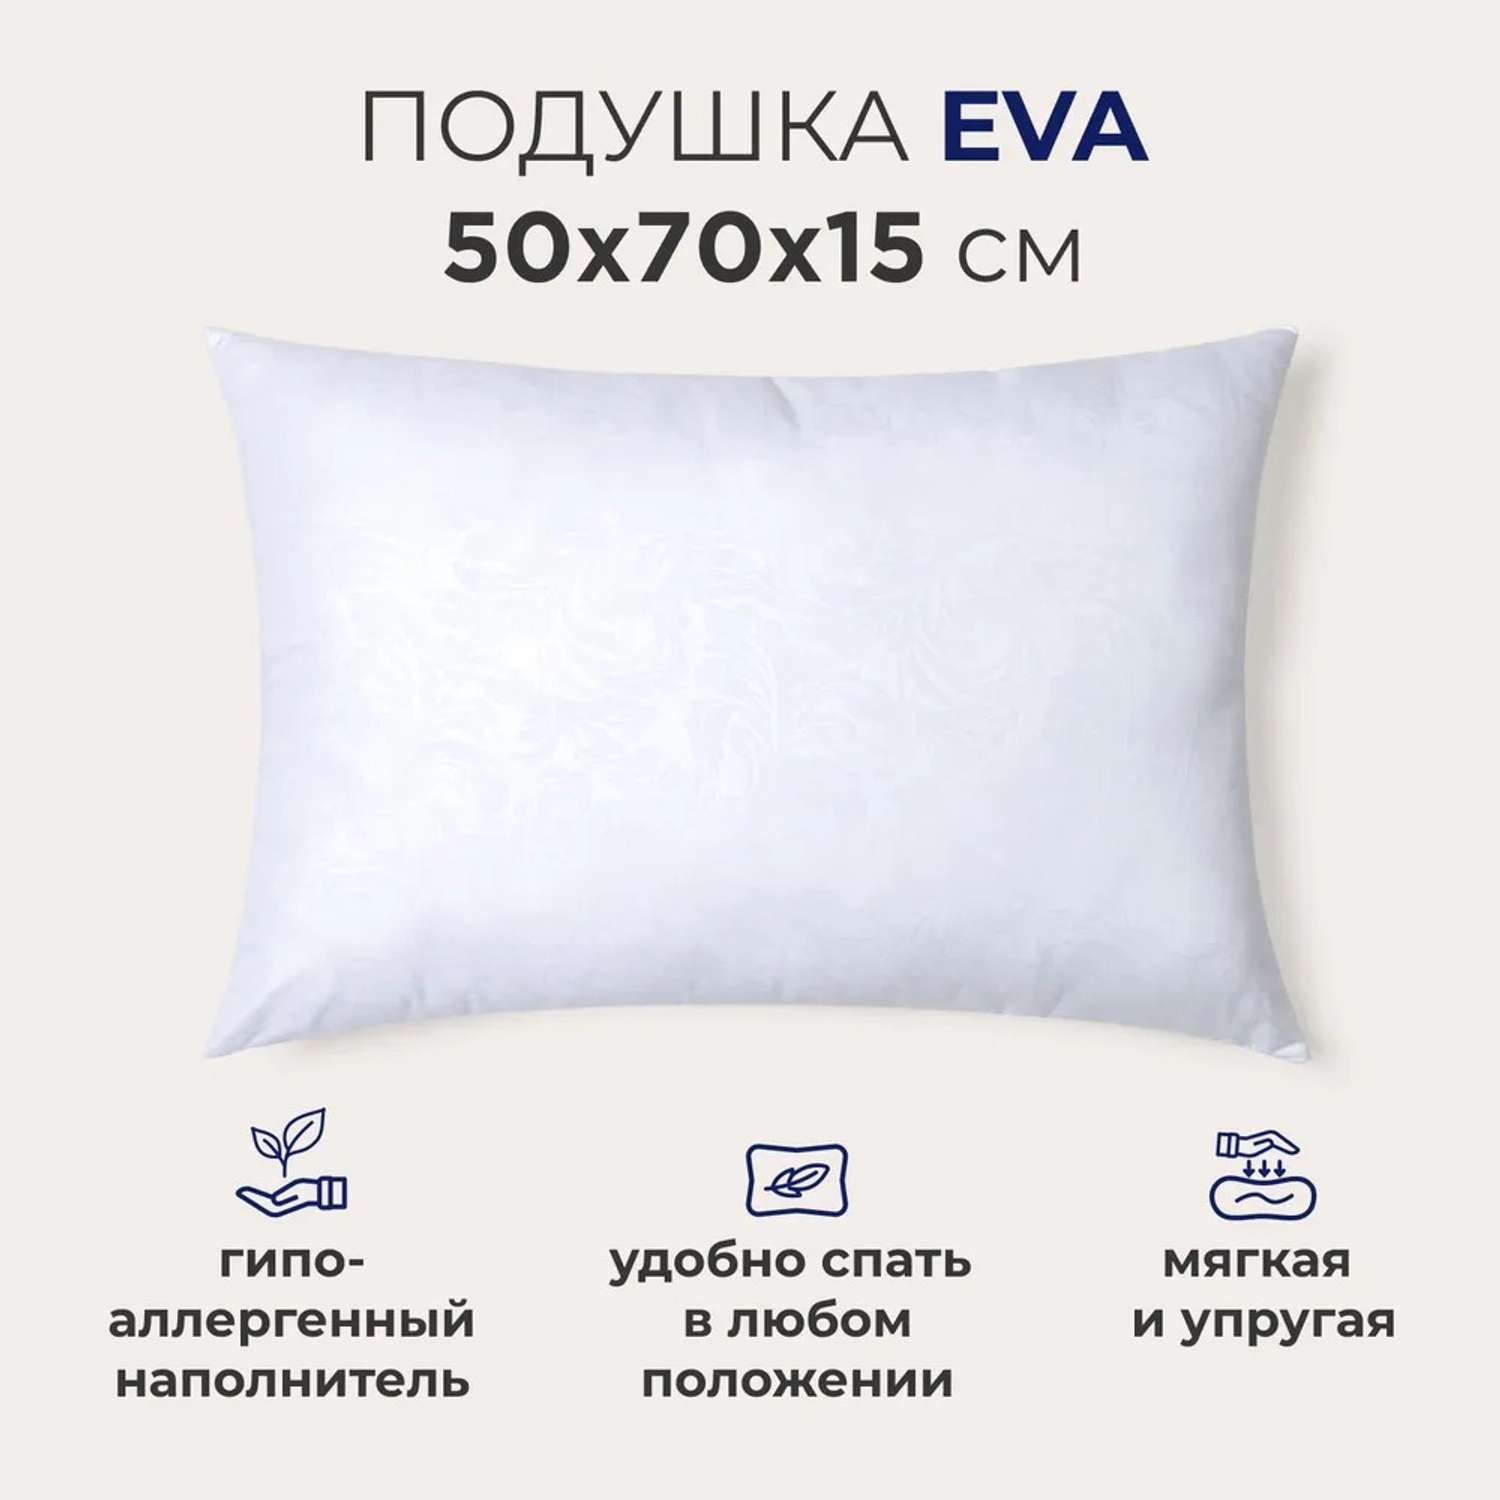 Подушка SONNO Eva 50x70 см гипоаллергенный наполнитель Amicor TM - фото 1